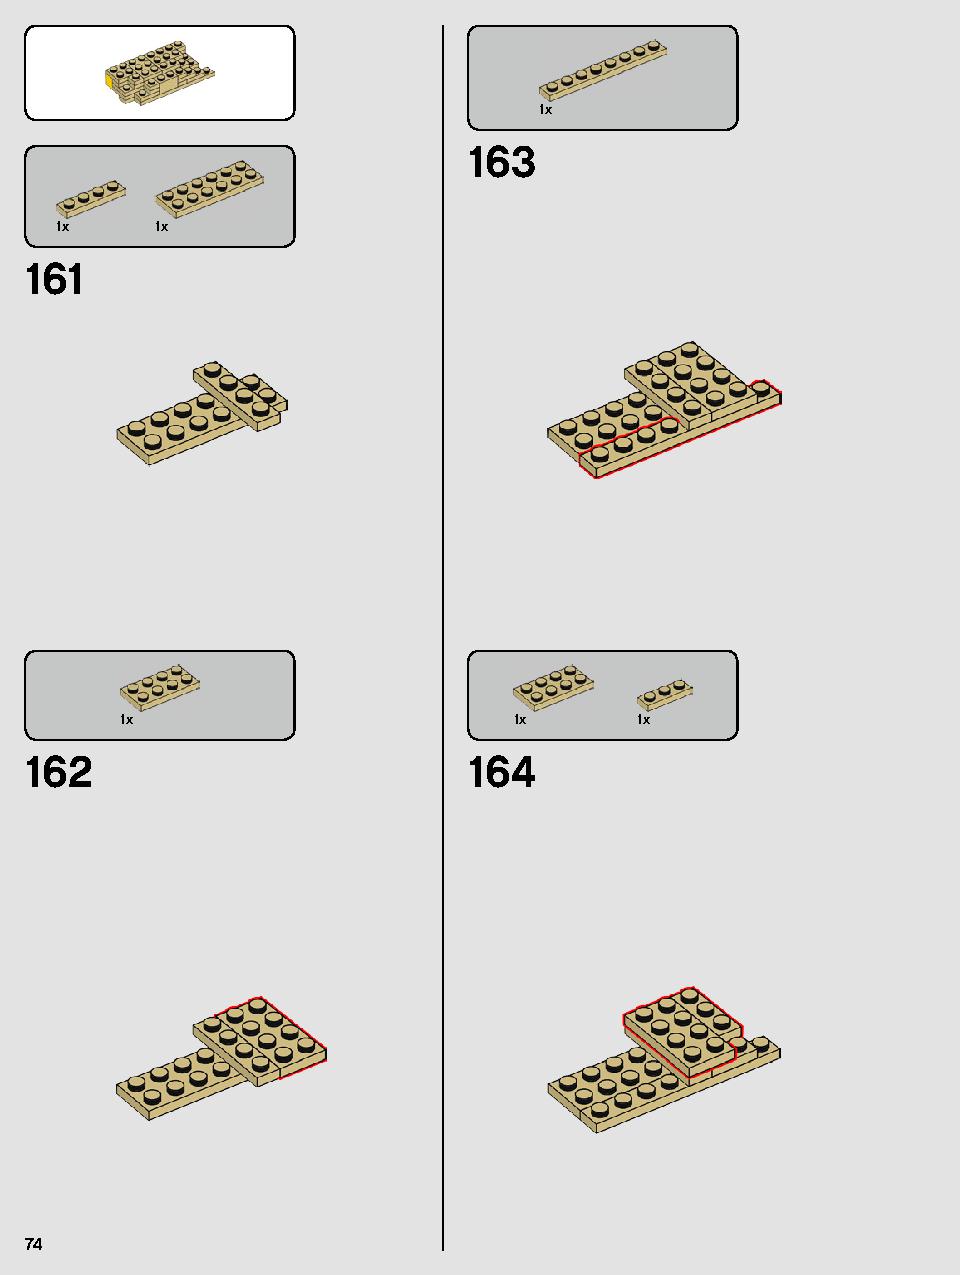 ヨーダ™ 75255 レゴの商品情報 レゴの説明書・組立方法 74 page